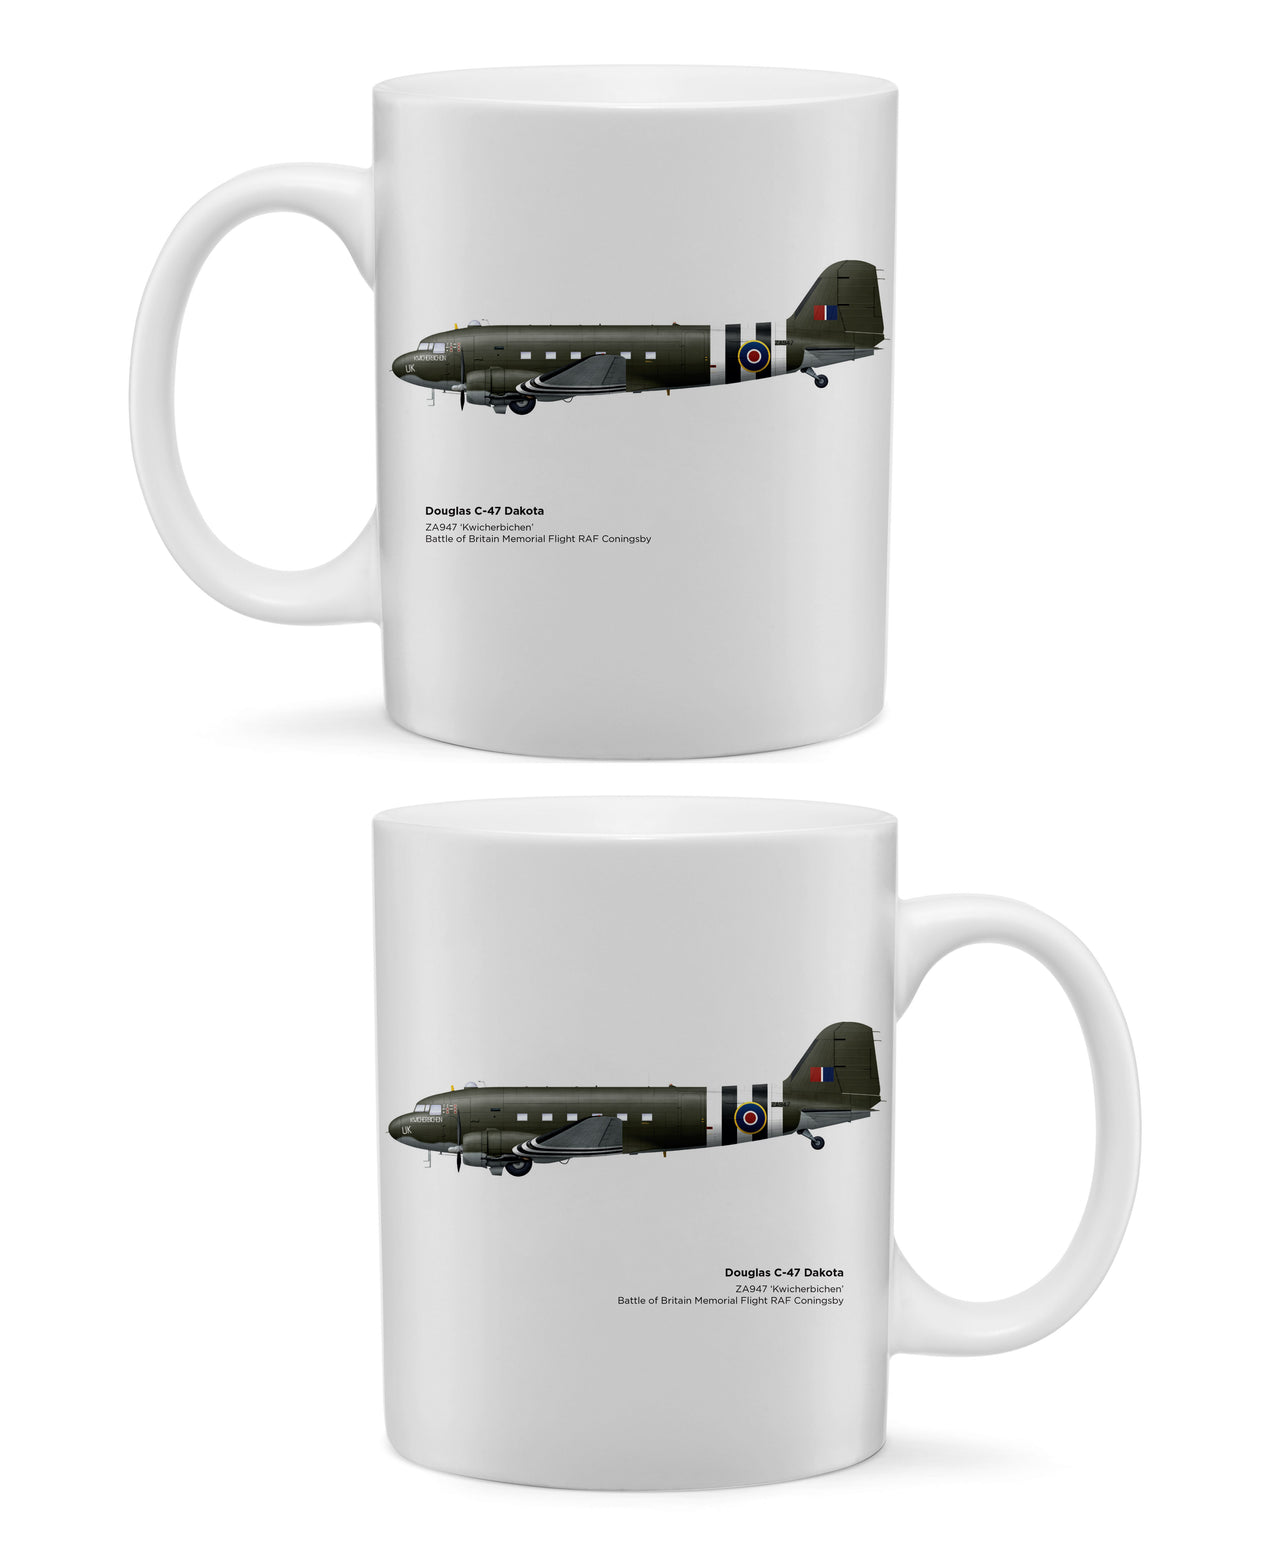 BBMF Douglas C-47 Dakota - Mug